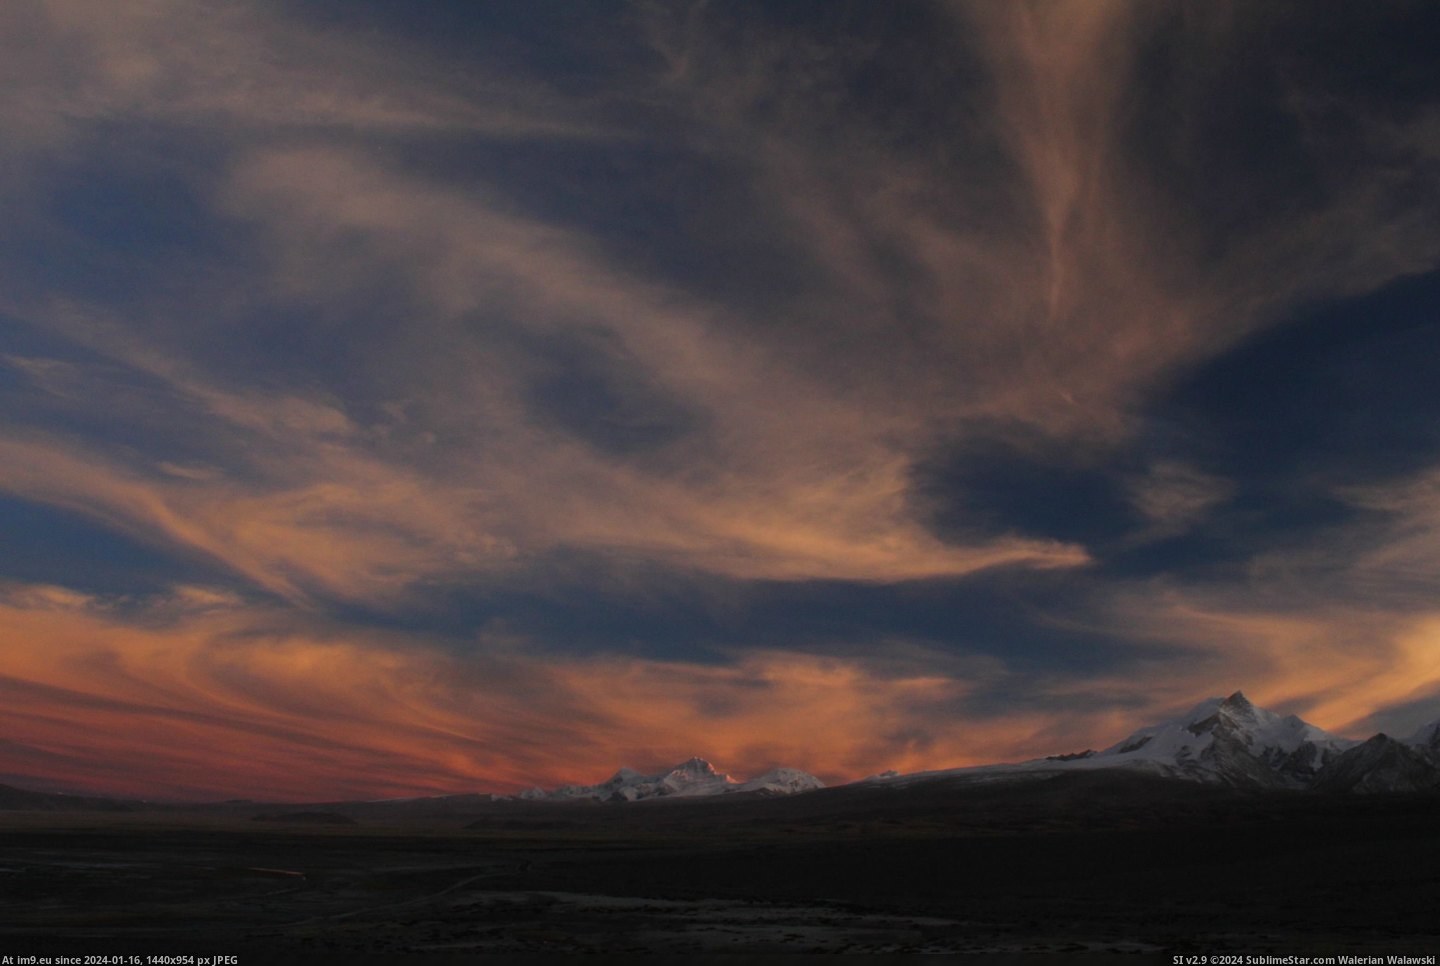 #Sunset #Clouds #3456x2304 #Himalayas #Tibet #Shaped #Phoenix [Earthporn] Sunset and phoenix shaped clouds over the Himalayas, Tibet[3456x2304] Pic. (Image of album My r/EARTHPORN favs))